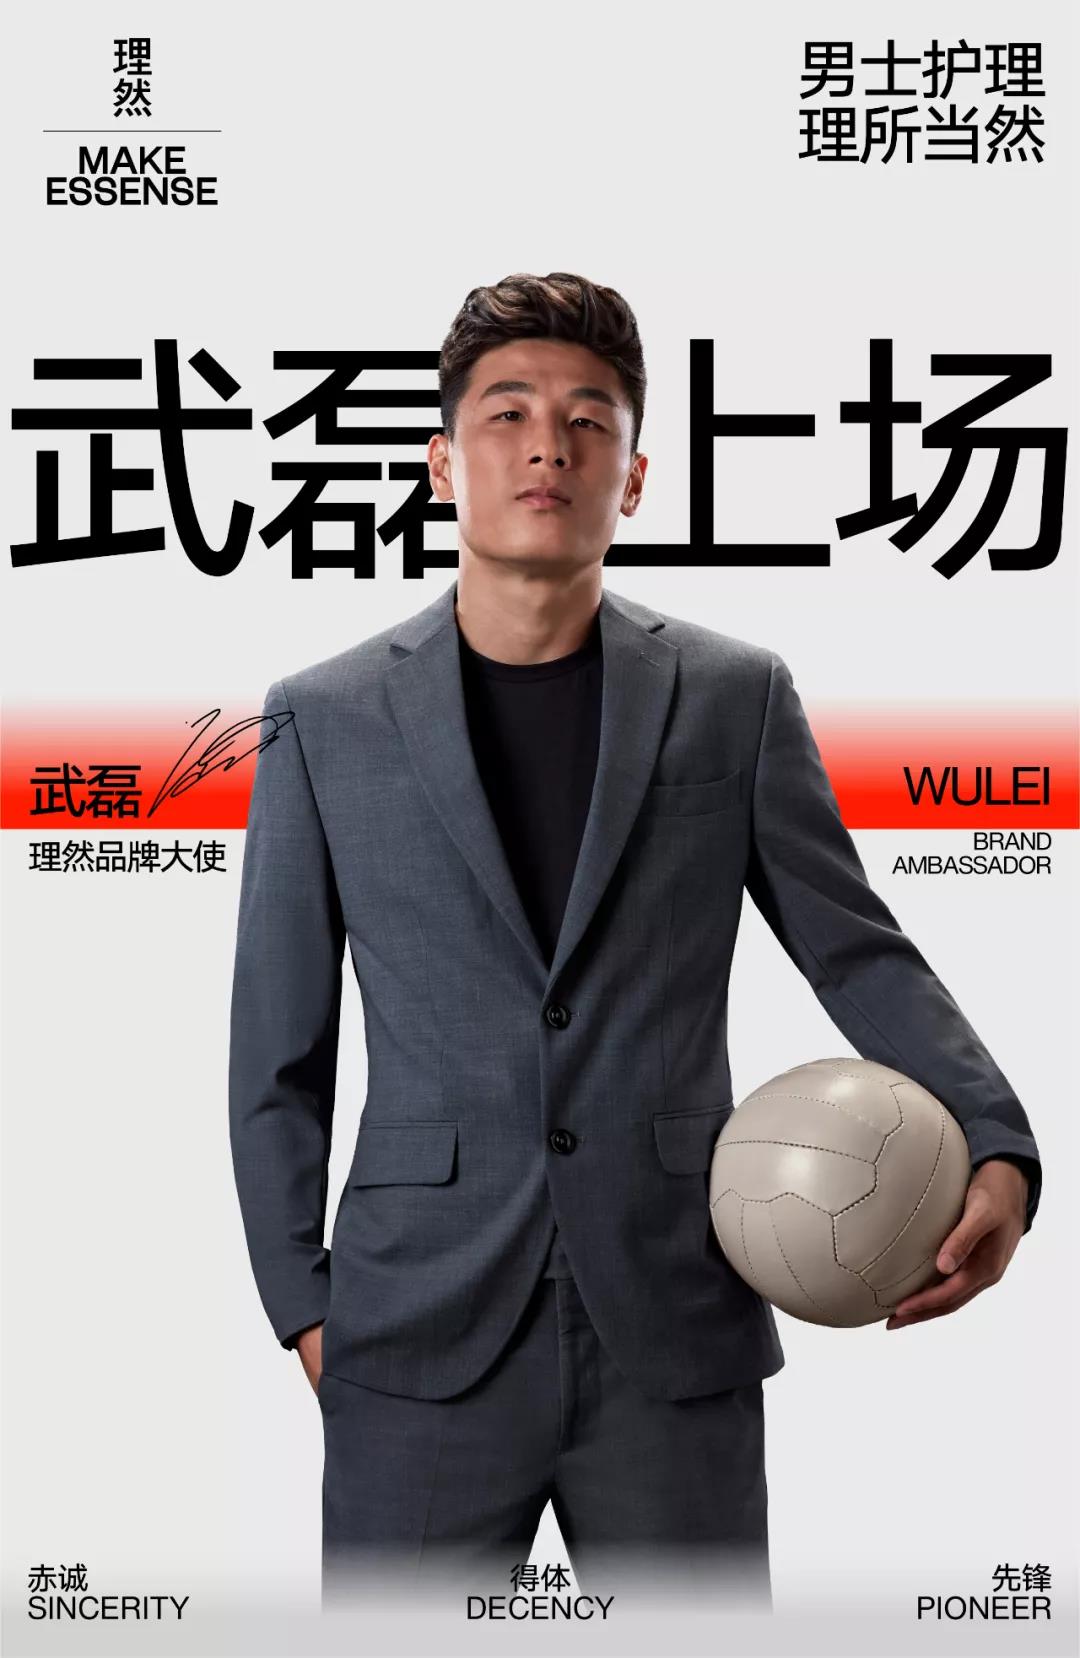 男士综合个护品牌理然迎来品牌大使——中国国家足球队队员武磊